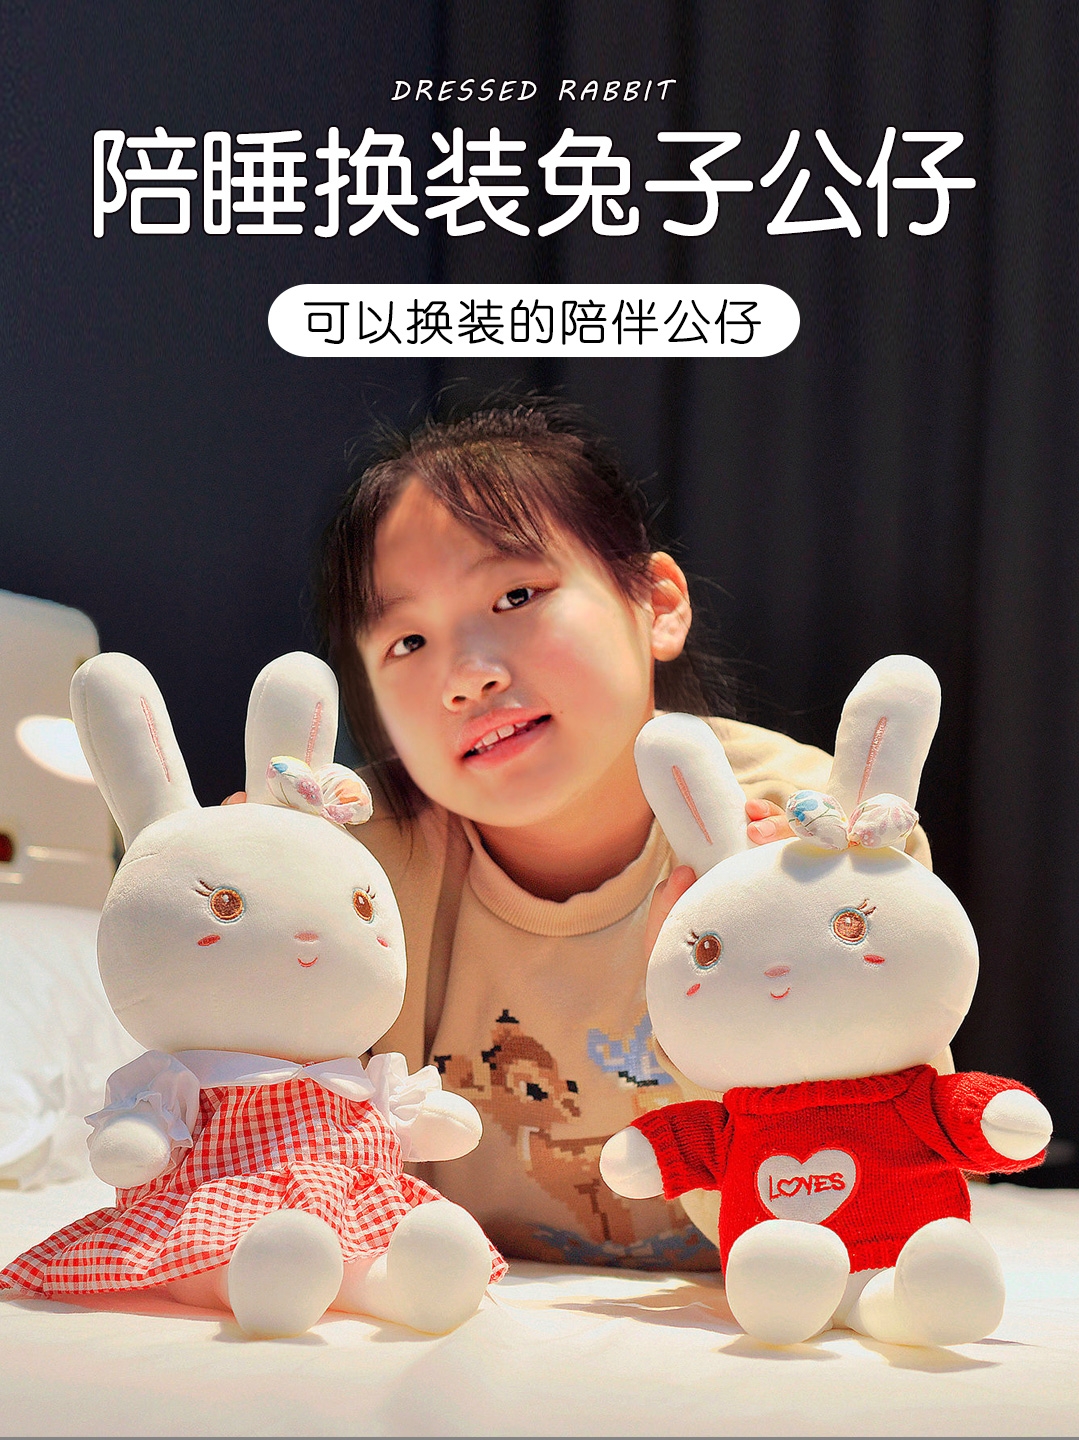 ตุ๊กตากระต่ายน่ารักสาวของเล่นตุ๊กตากระต่ายขนาดเล็กที่จะมาพร้อมกับตุ๊กตานอนตุ๊กตาตุ๊กตากระต่ายสีขาว